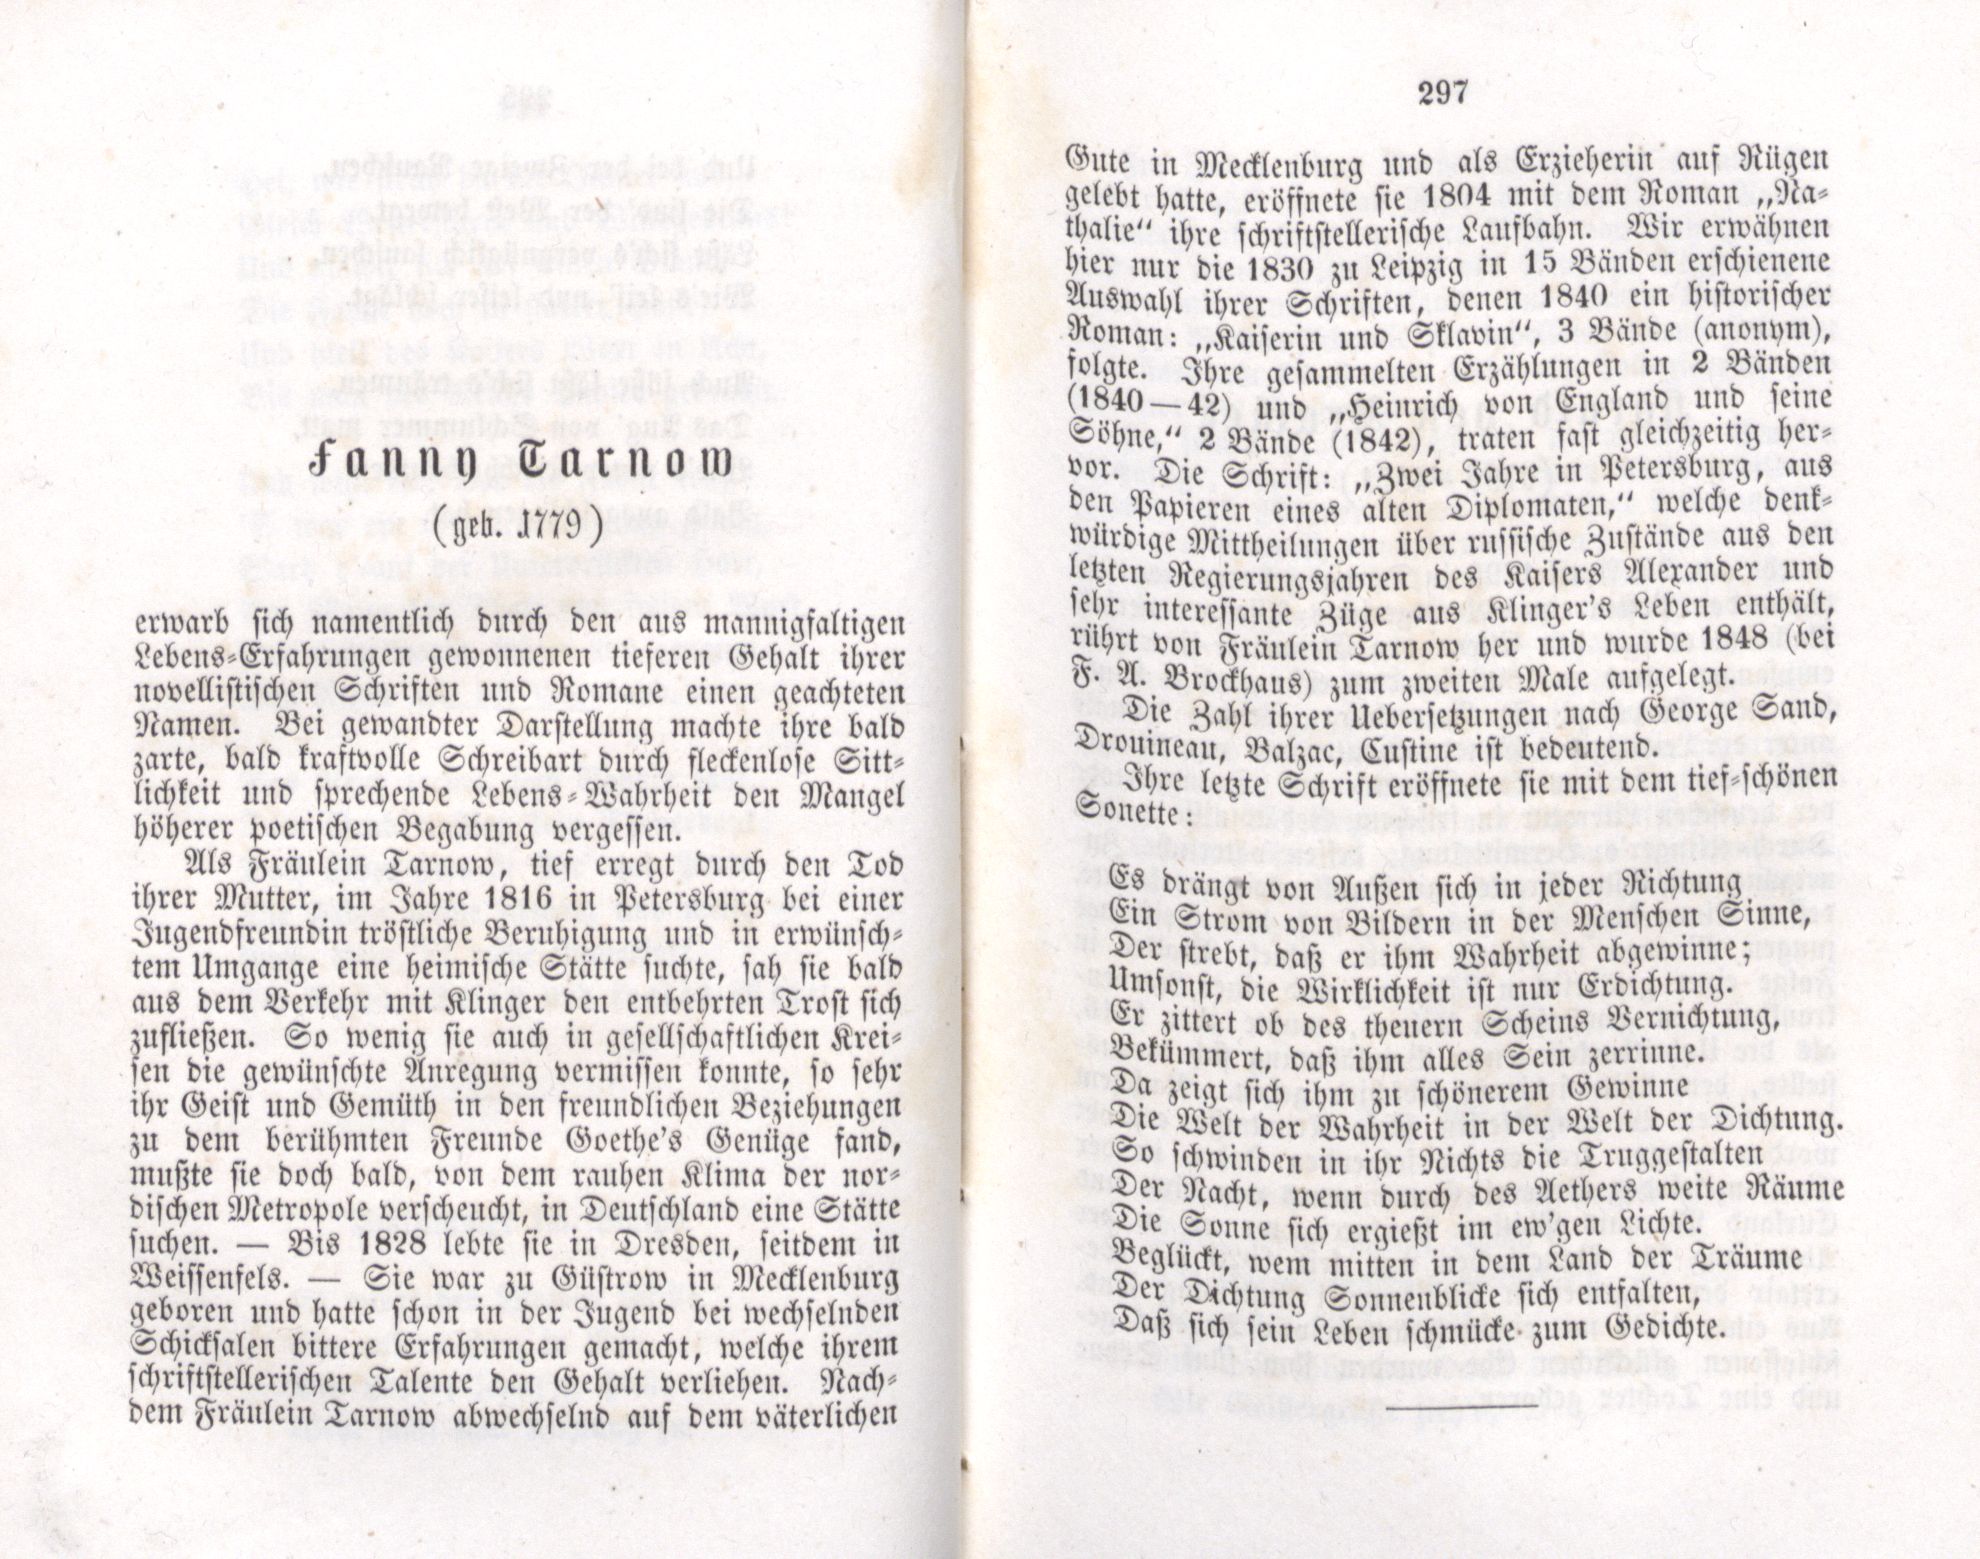 Fanny Tarnow (1855) | 1. (296-297) Main body of text